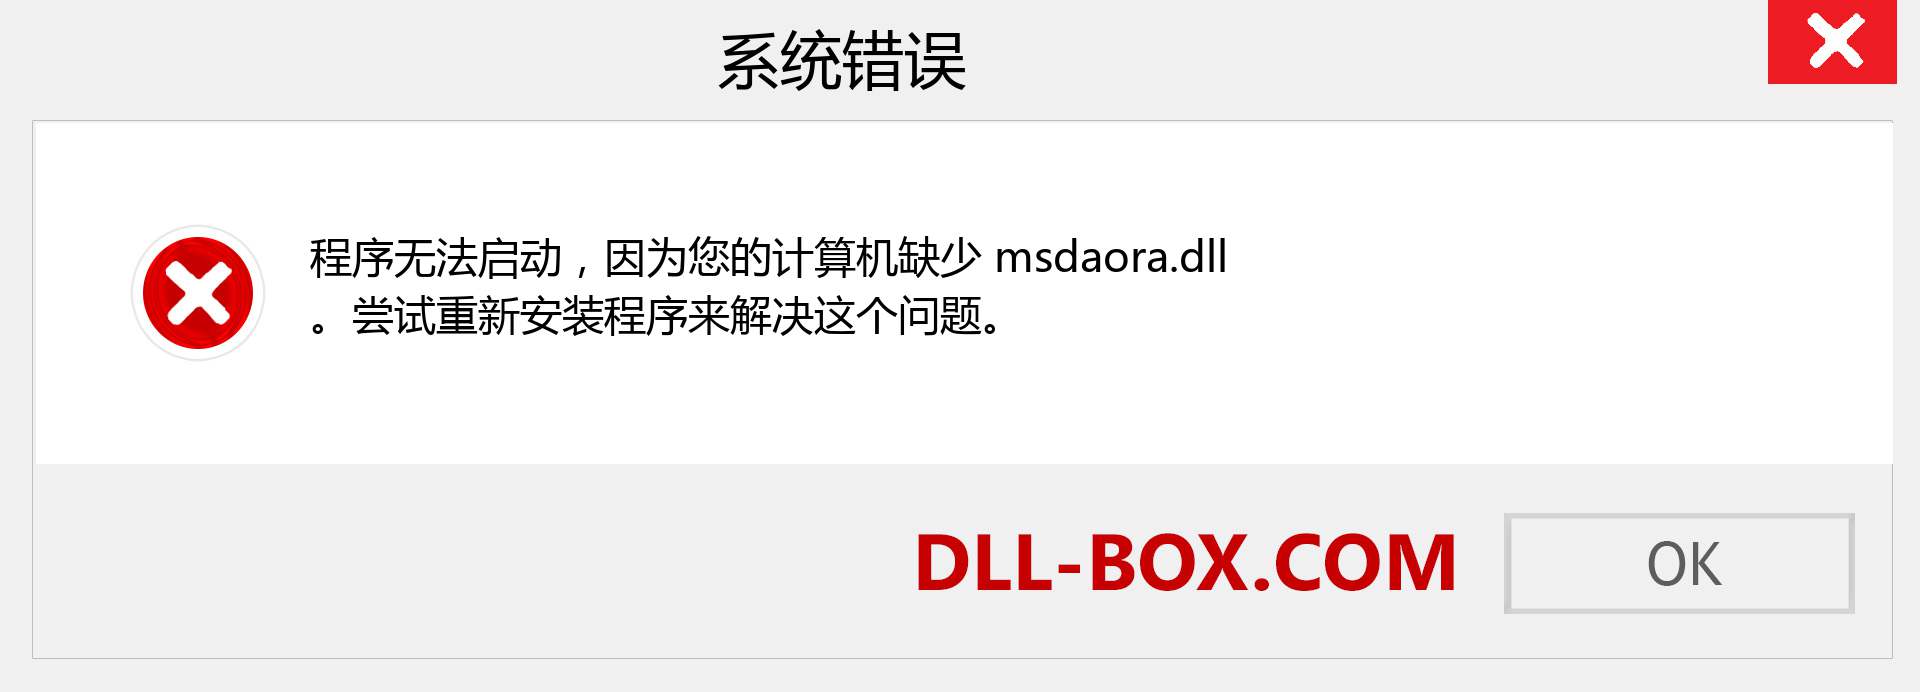 msdaora.dll 文件丢失？。 适用于 Windows 7、8、10 的下载 - 修复 Windows、照片、图像上的 msdaora dll 丢失错误